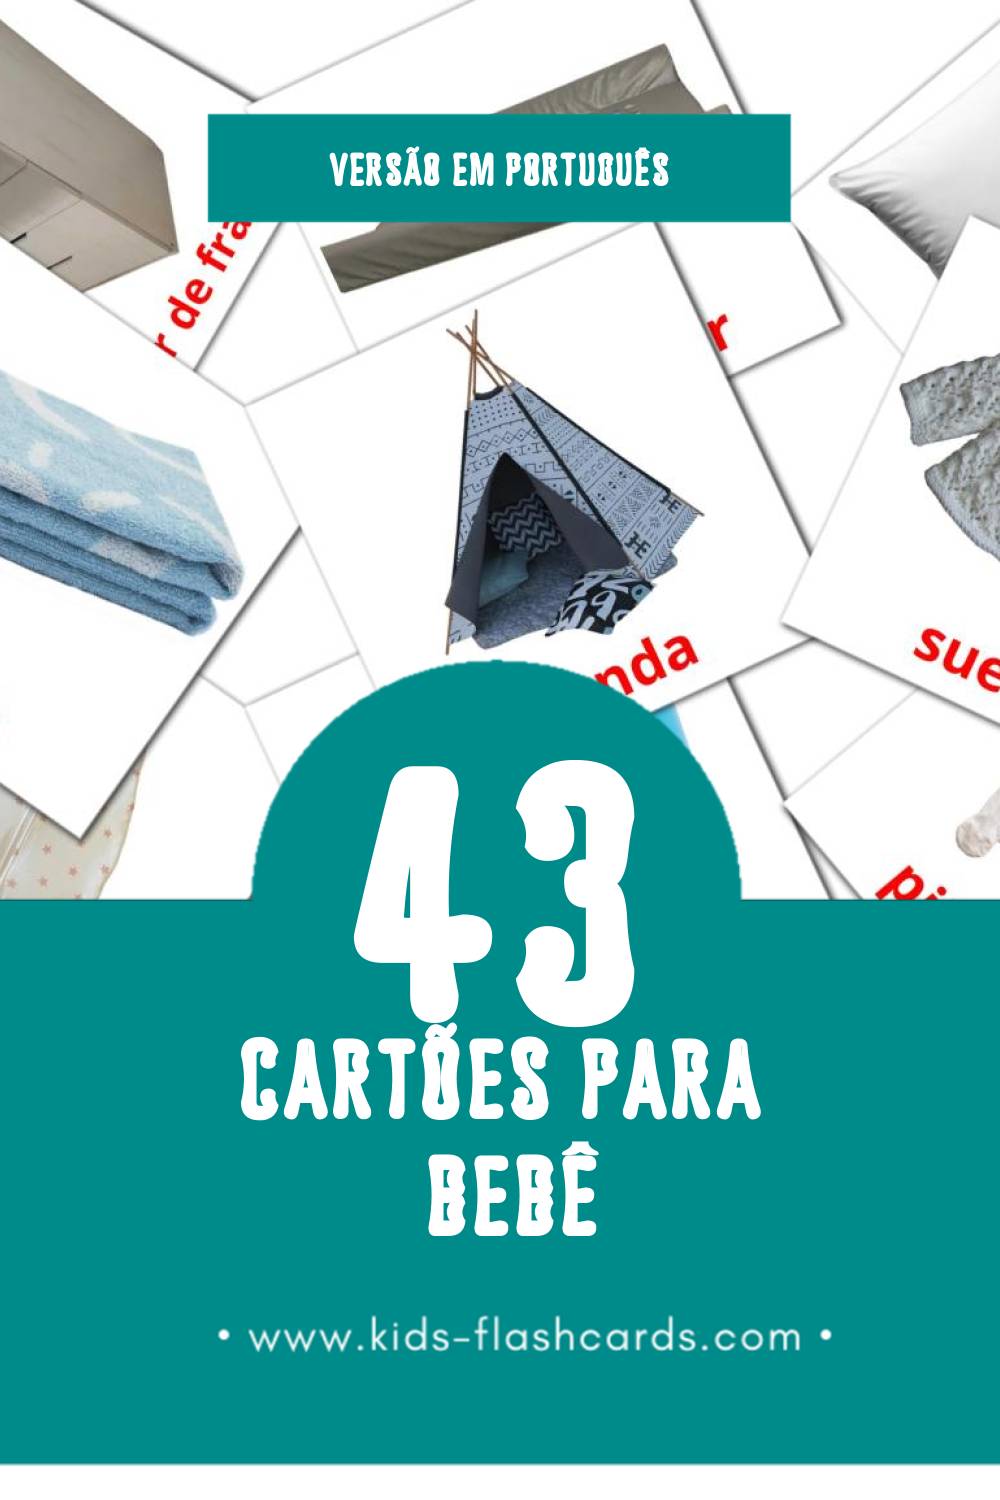 Flashcards de Bebê Visuais para Toddlers (45 cartões em Português)